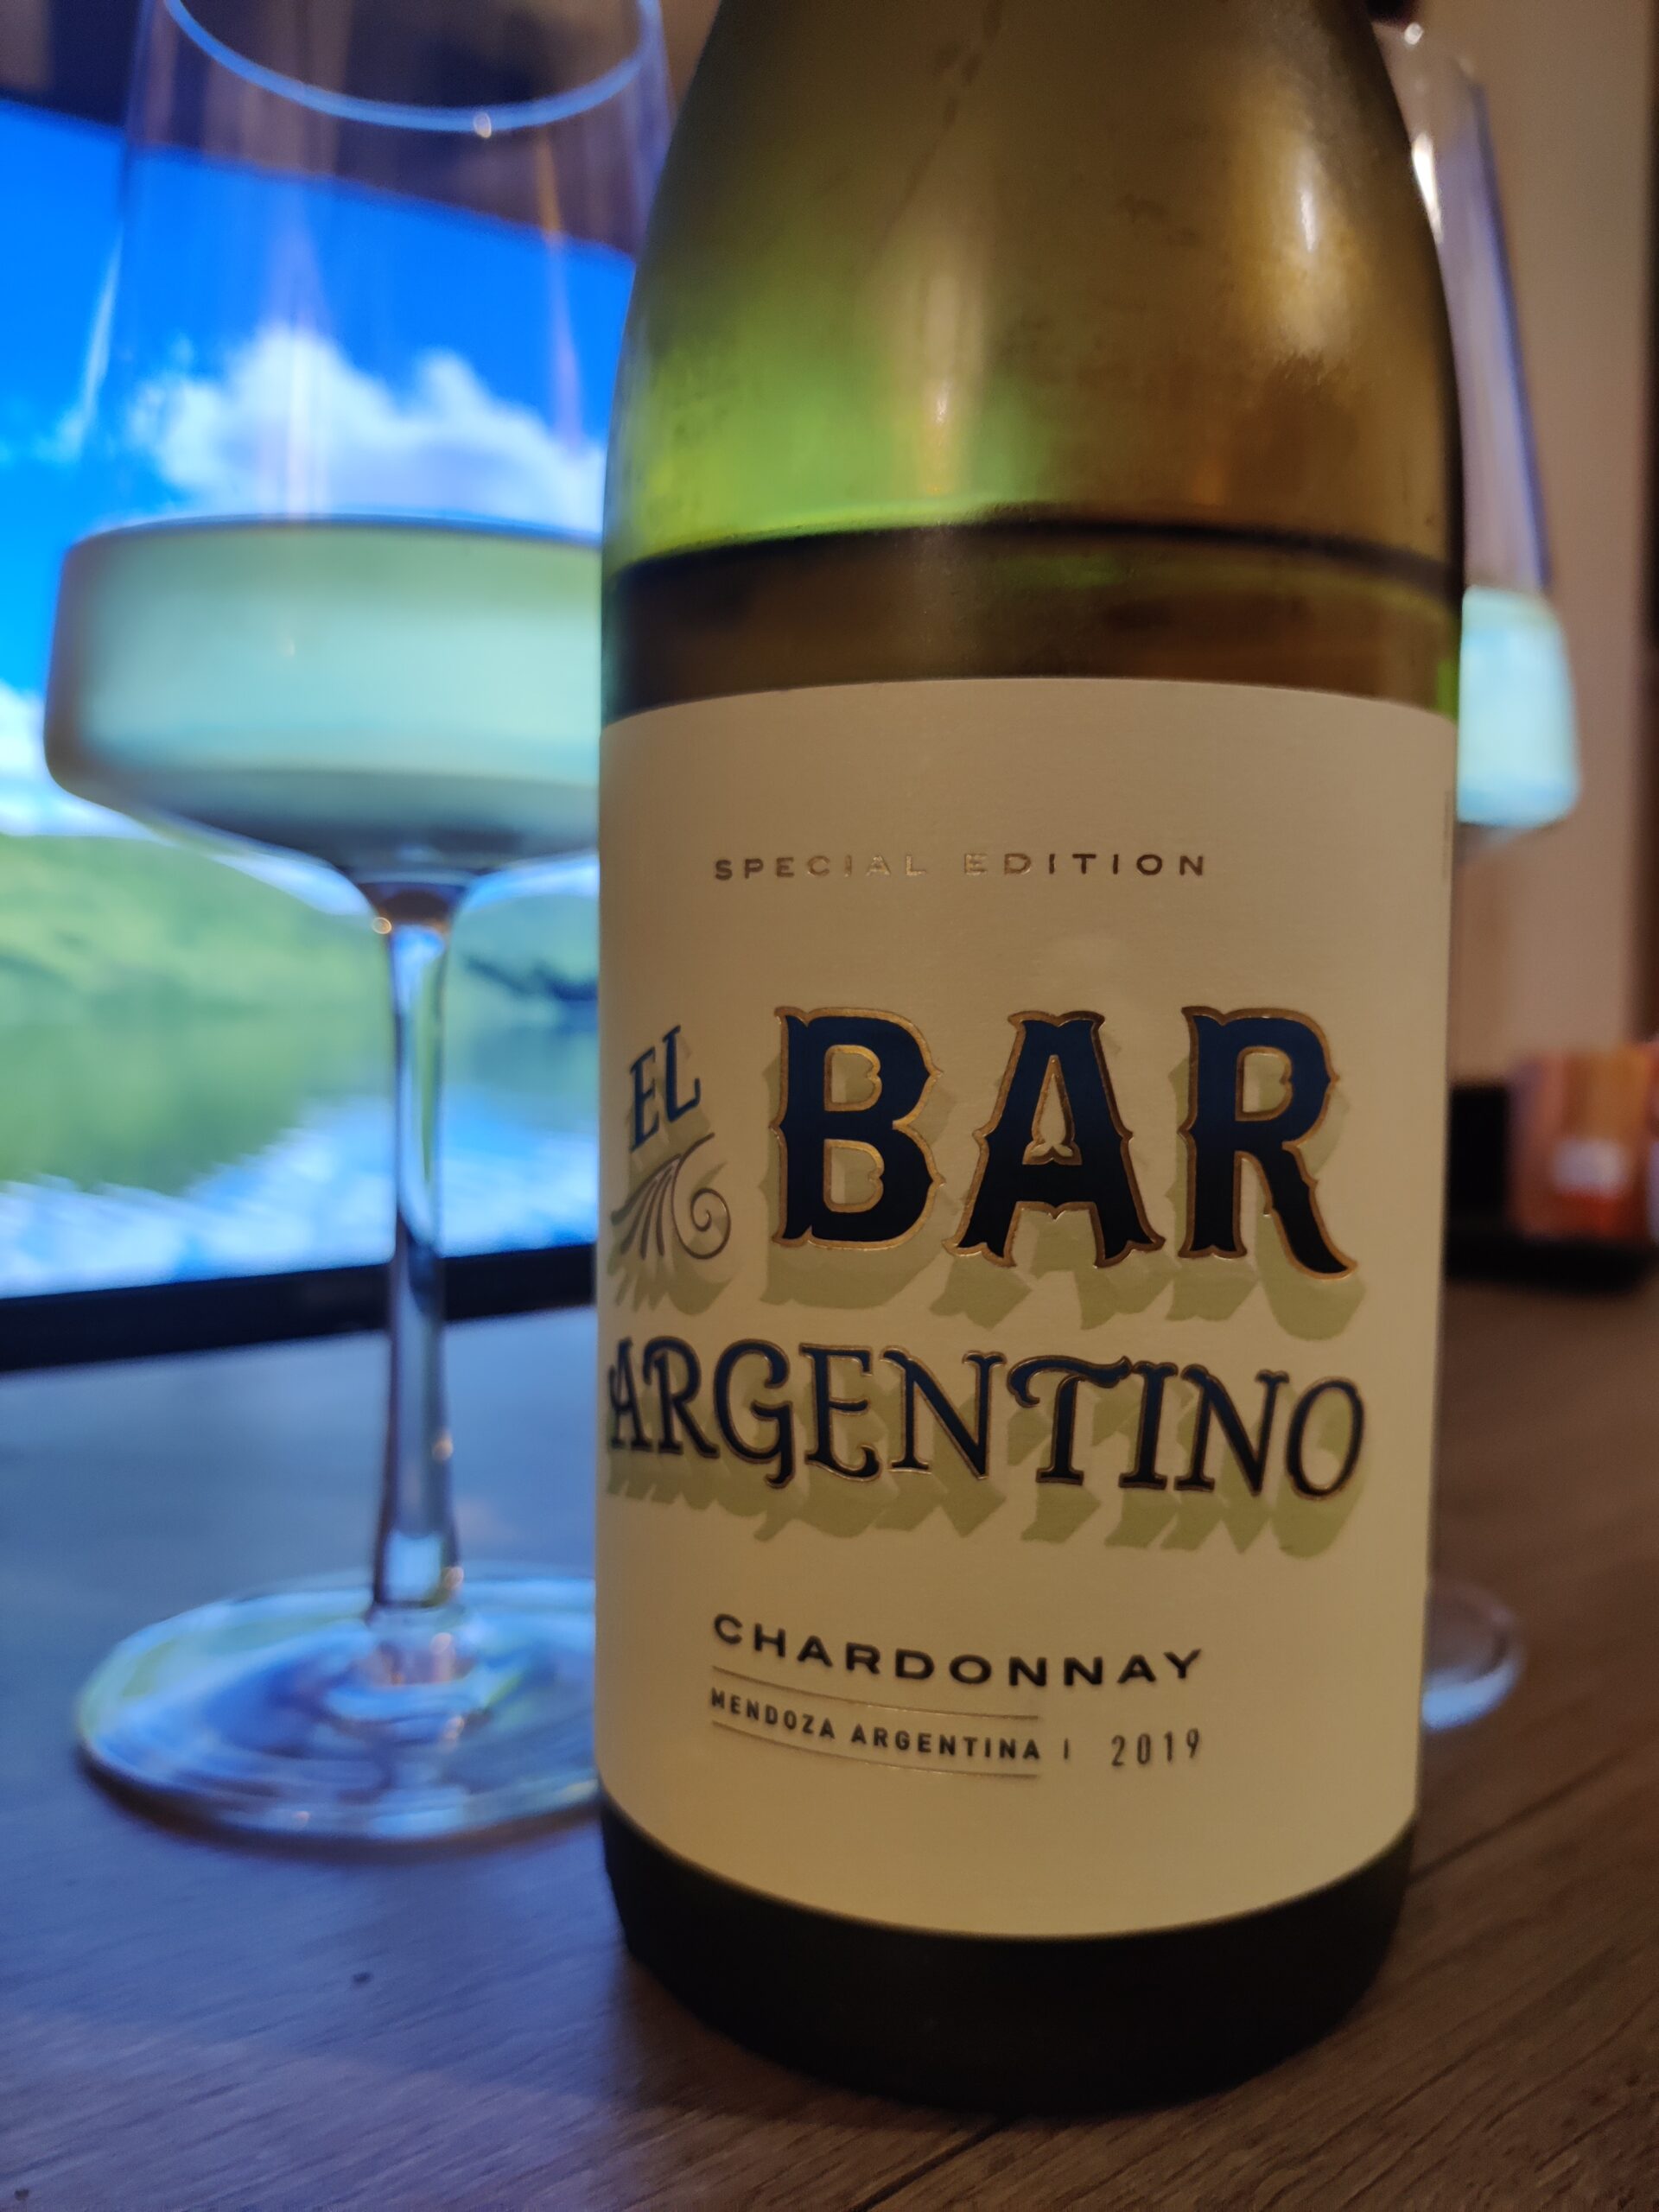 El Bar Argentino Chardonnay 2019